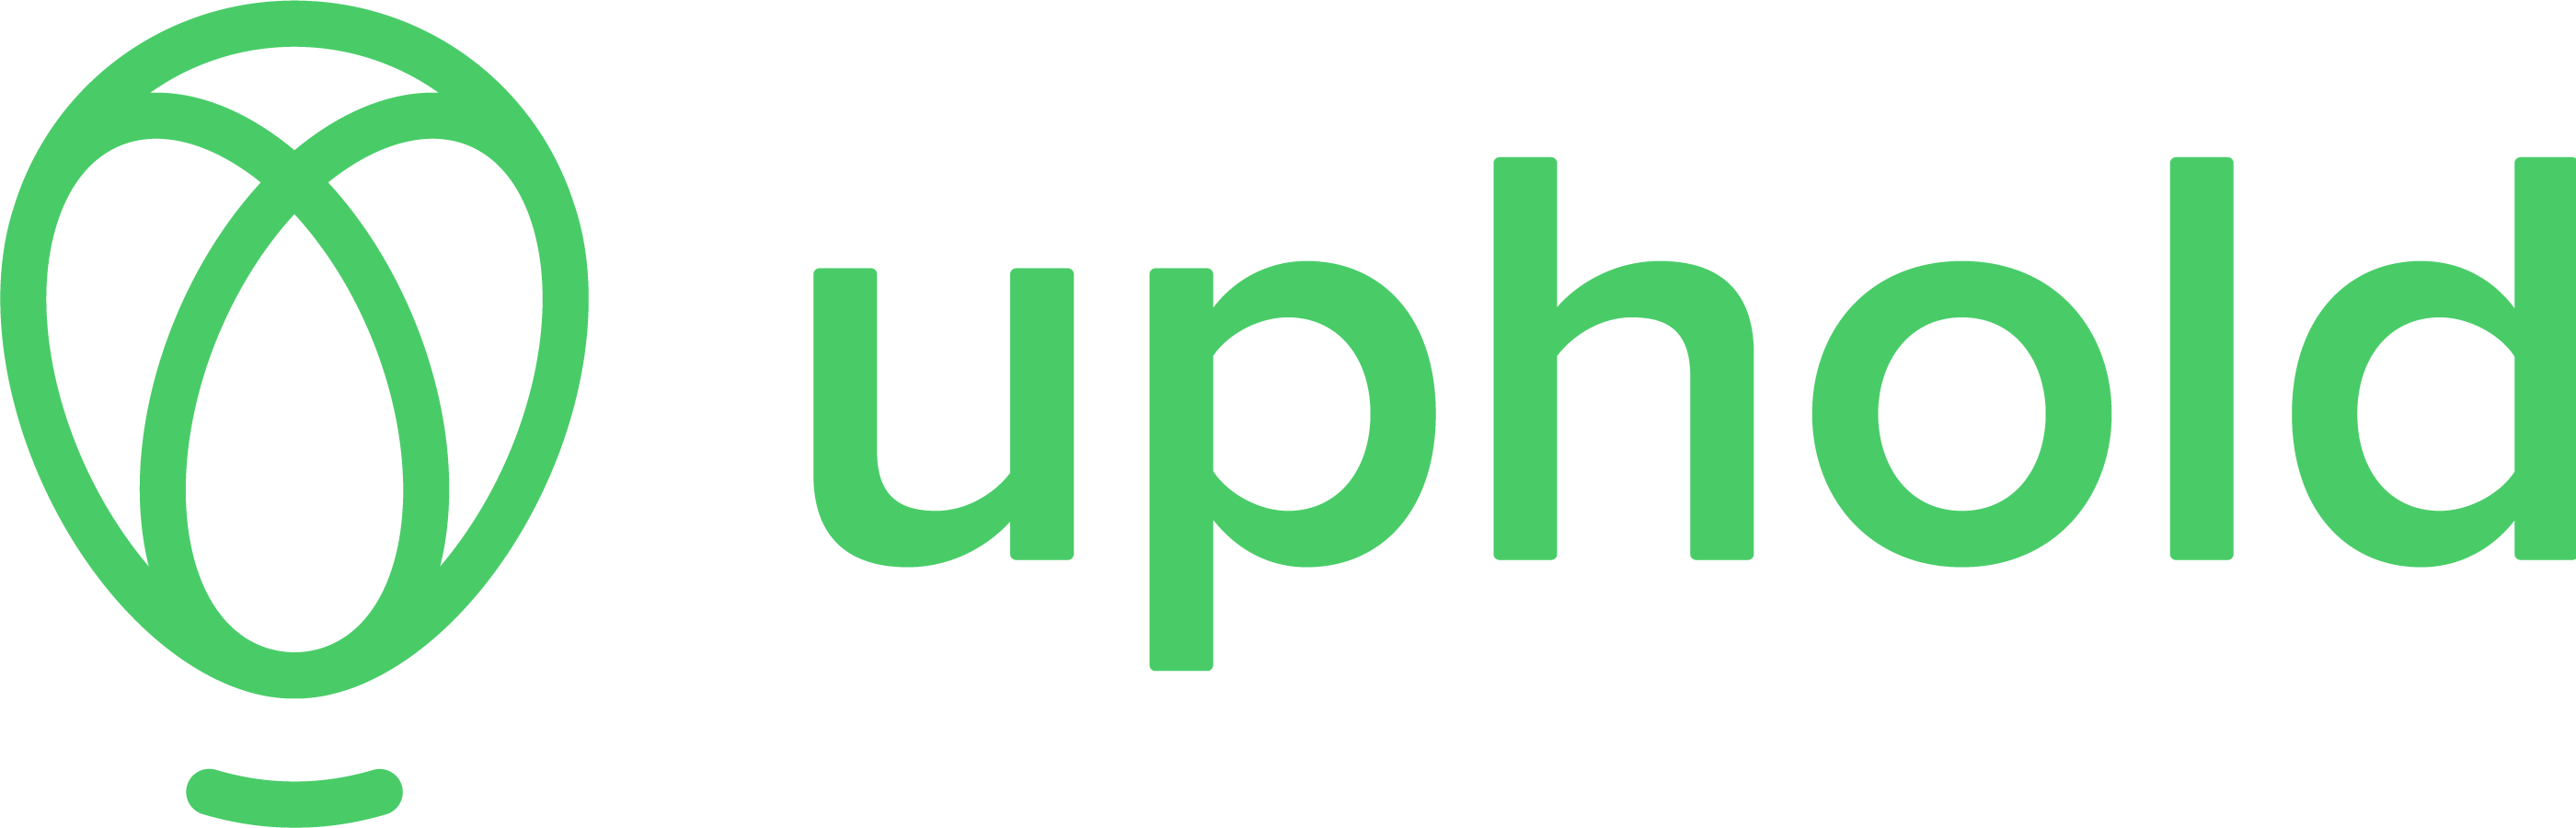 uphold logo